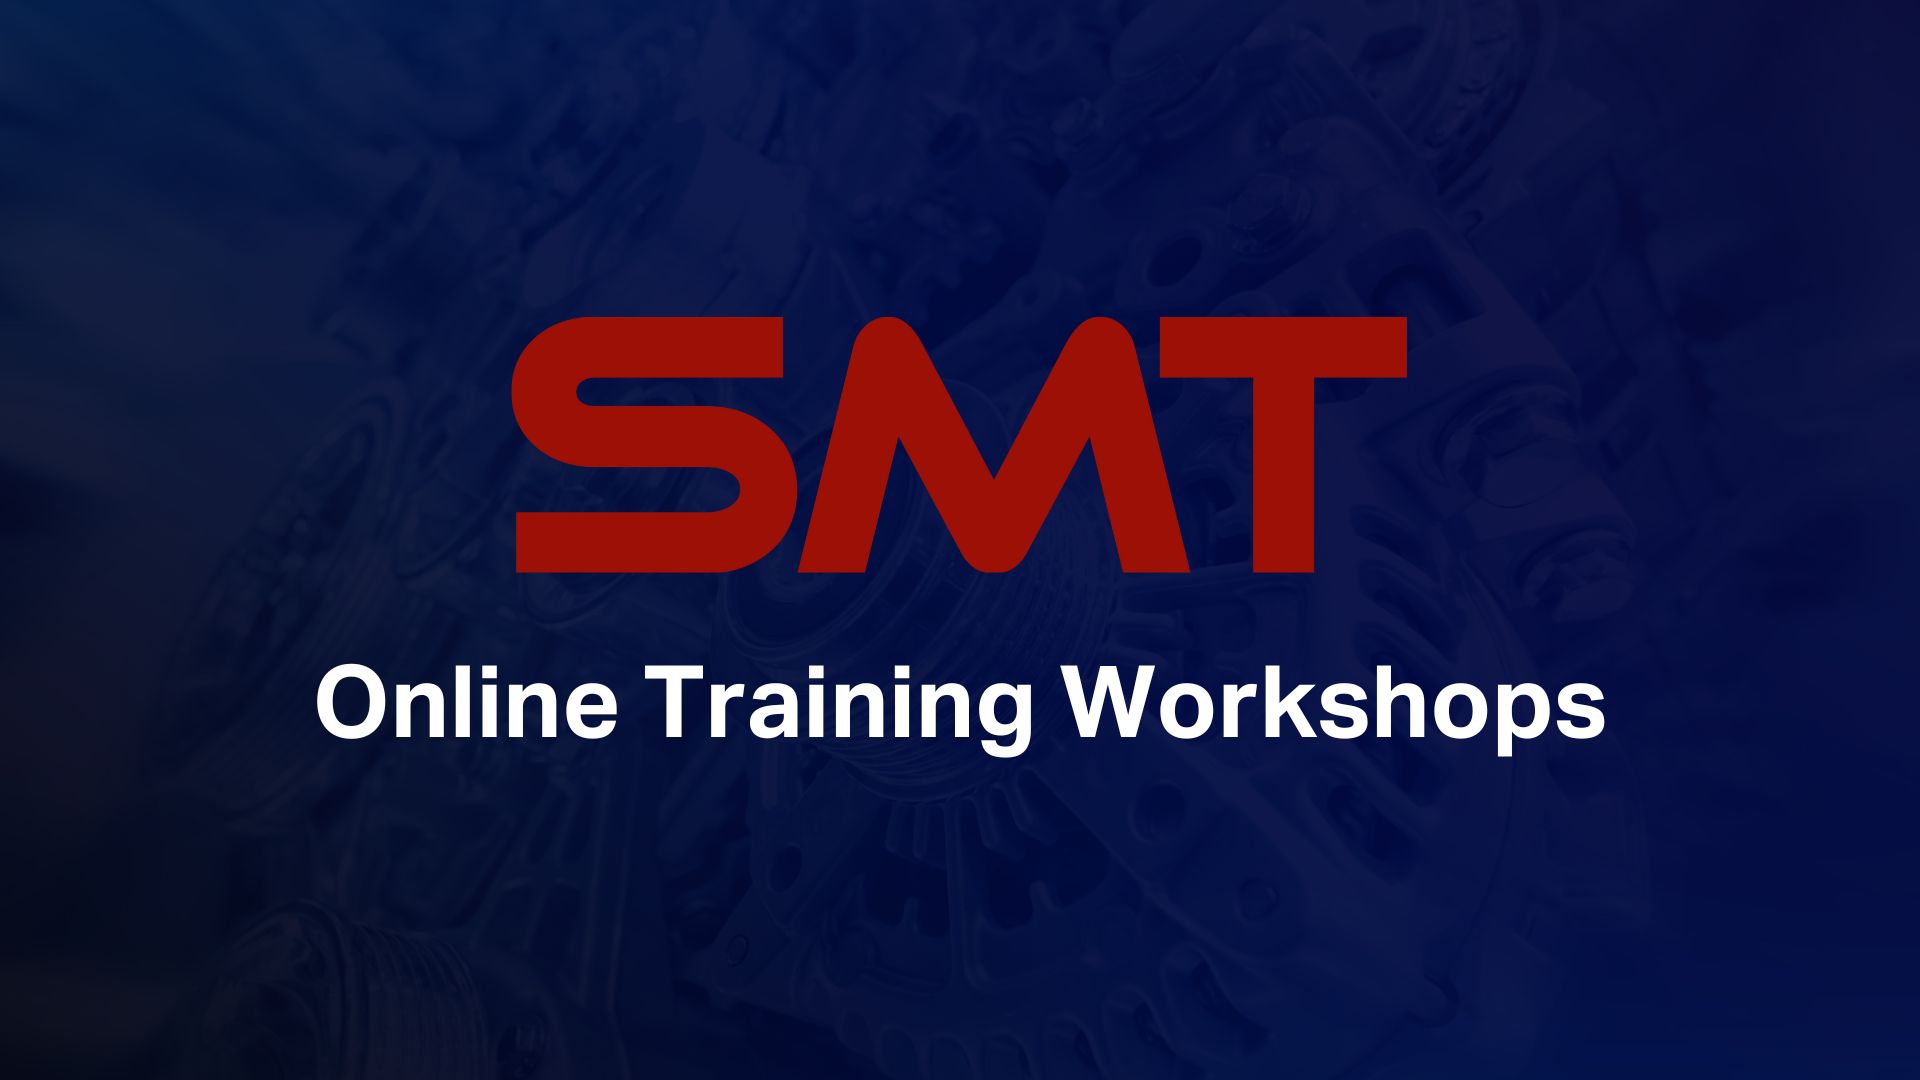 SMT Online Training Workshops Banner.